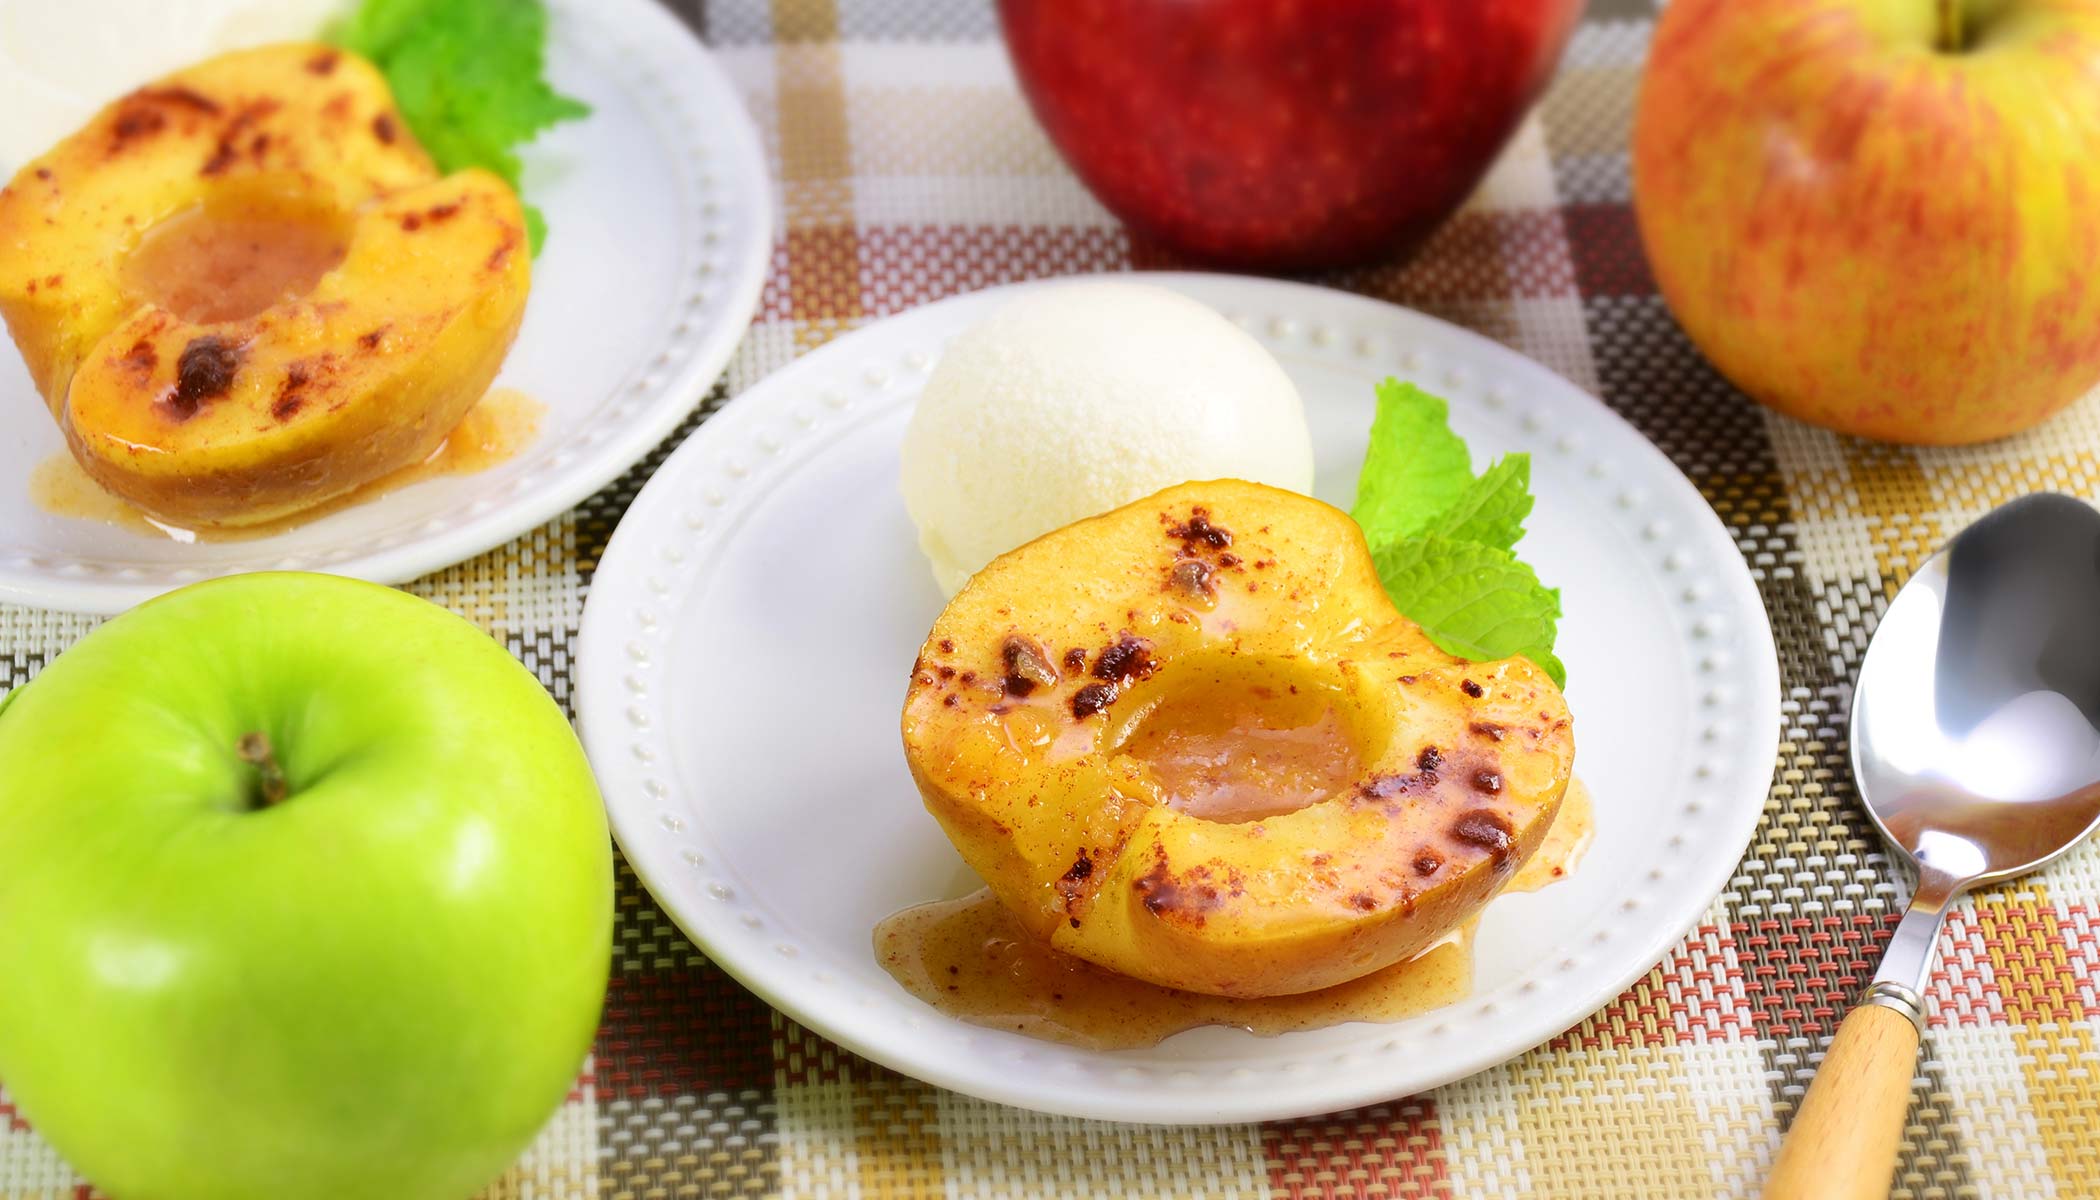 Zojirushi Recipe – Baked Apples in Foil